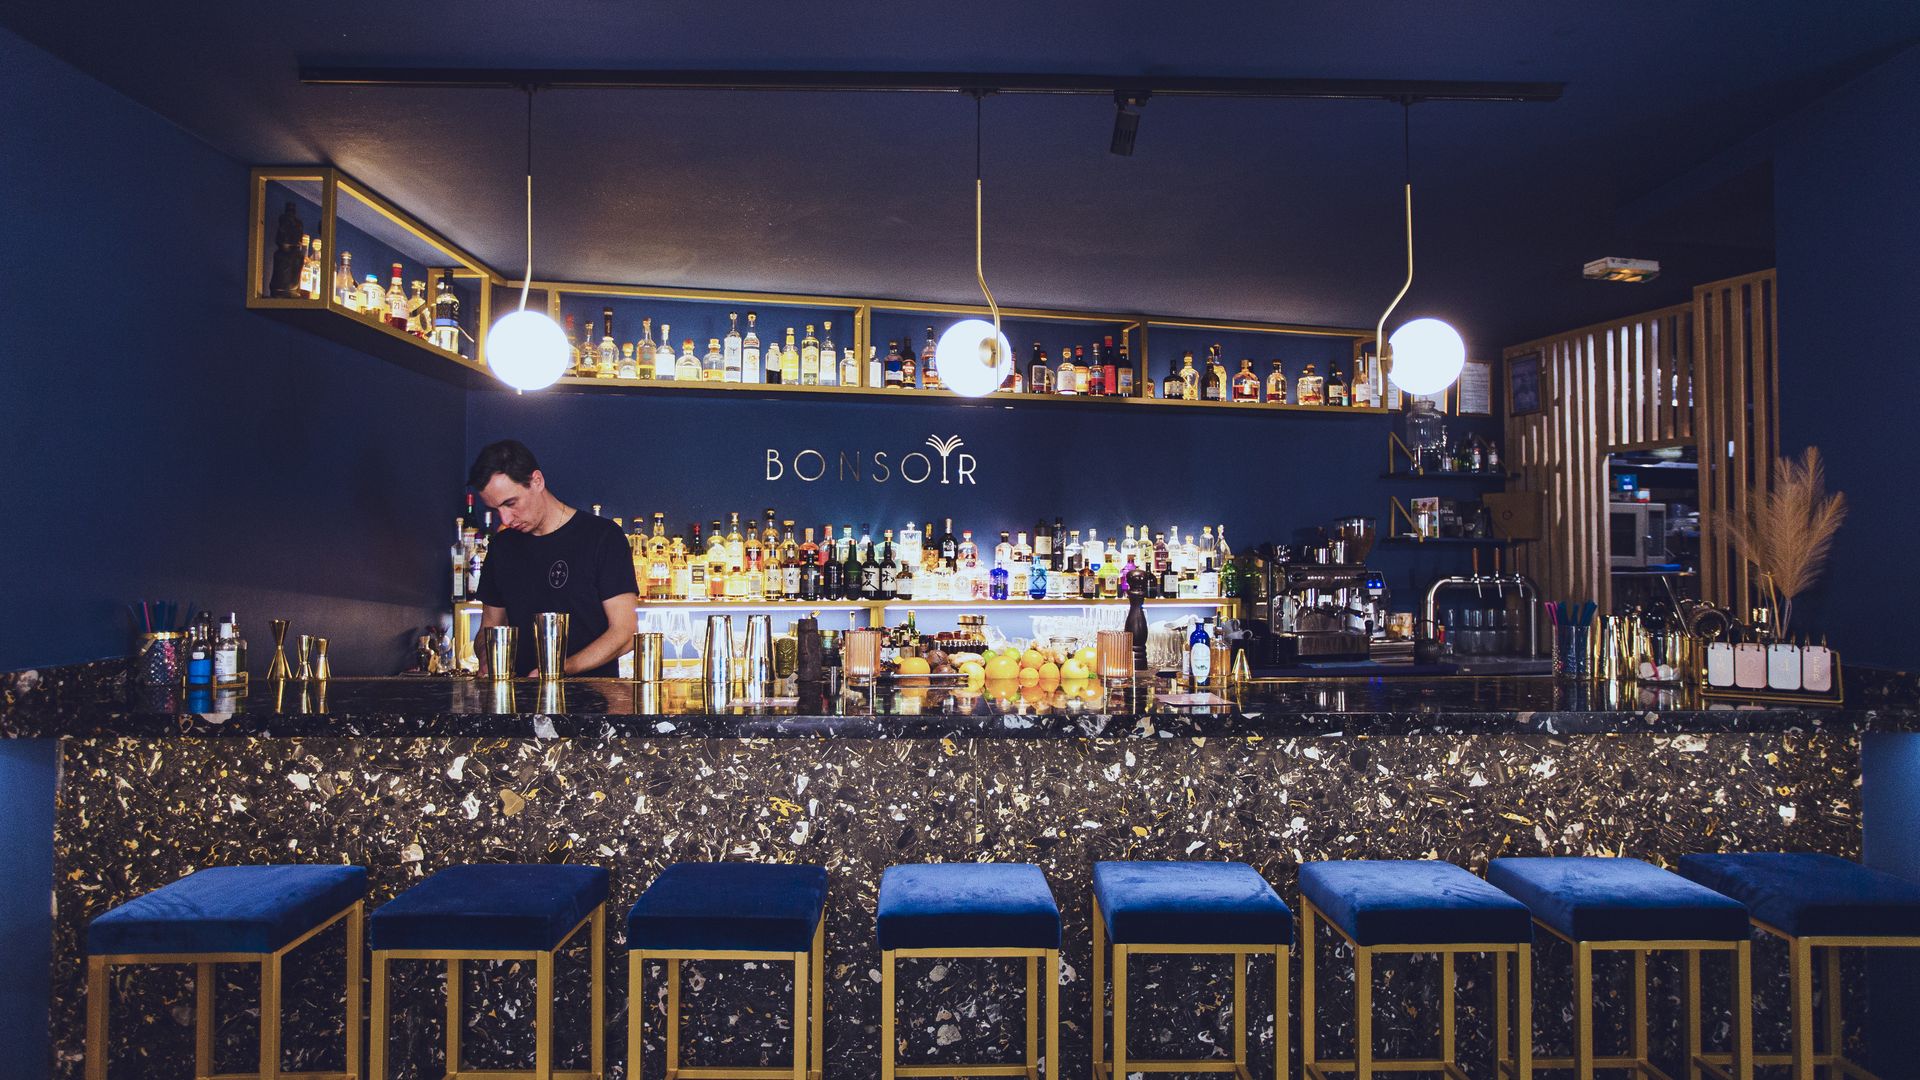 Serveur en train de faire un cocktail derrière le bar bleu et or du Bonsoir Cocktail